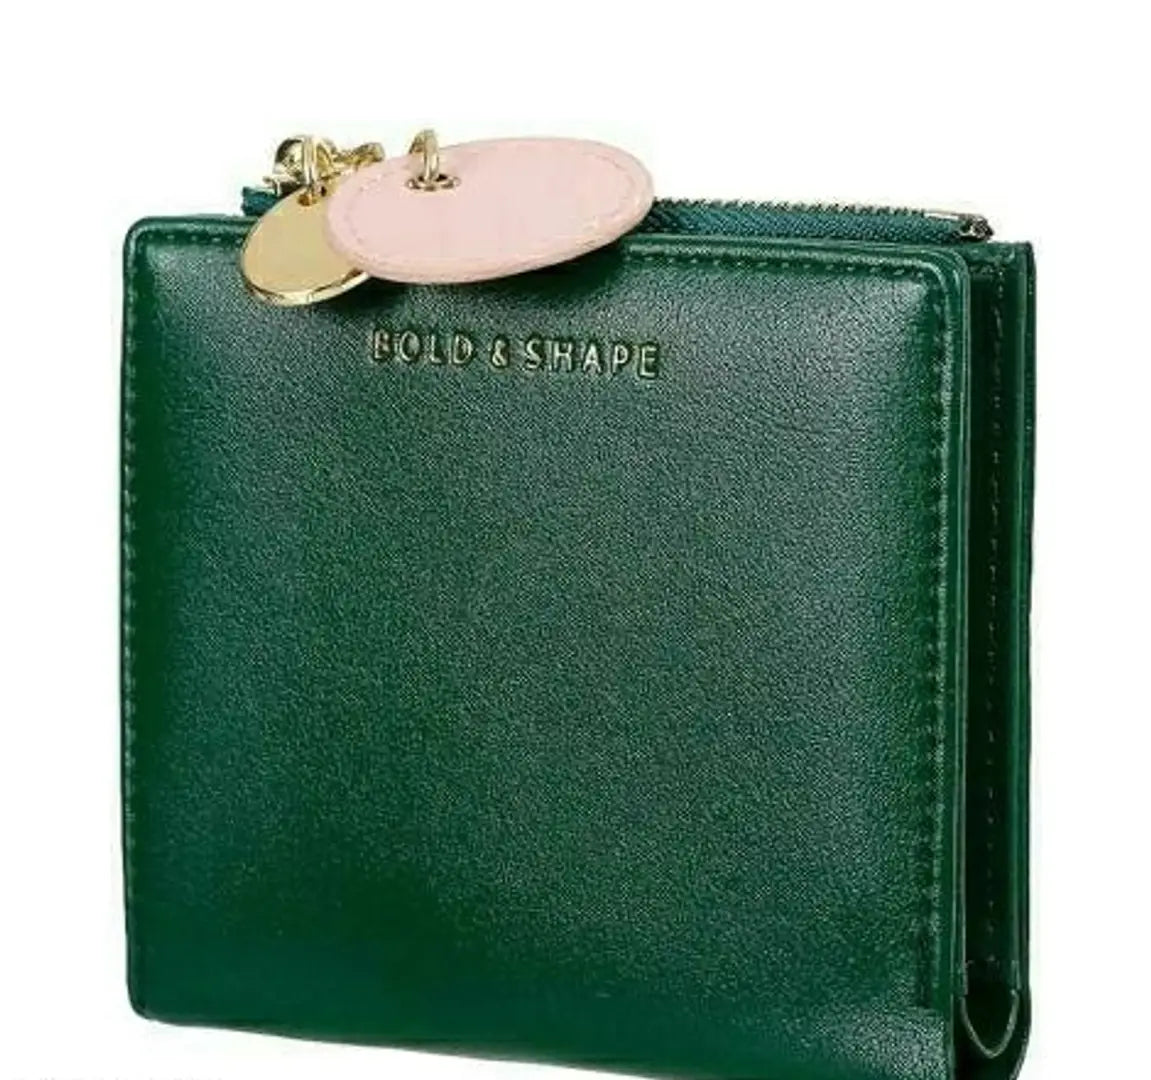 Ladies wallet